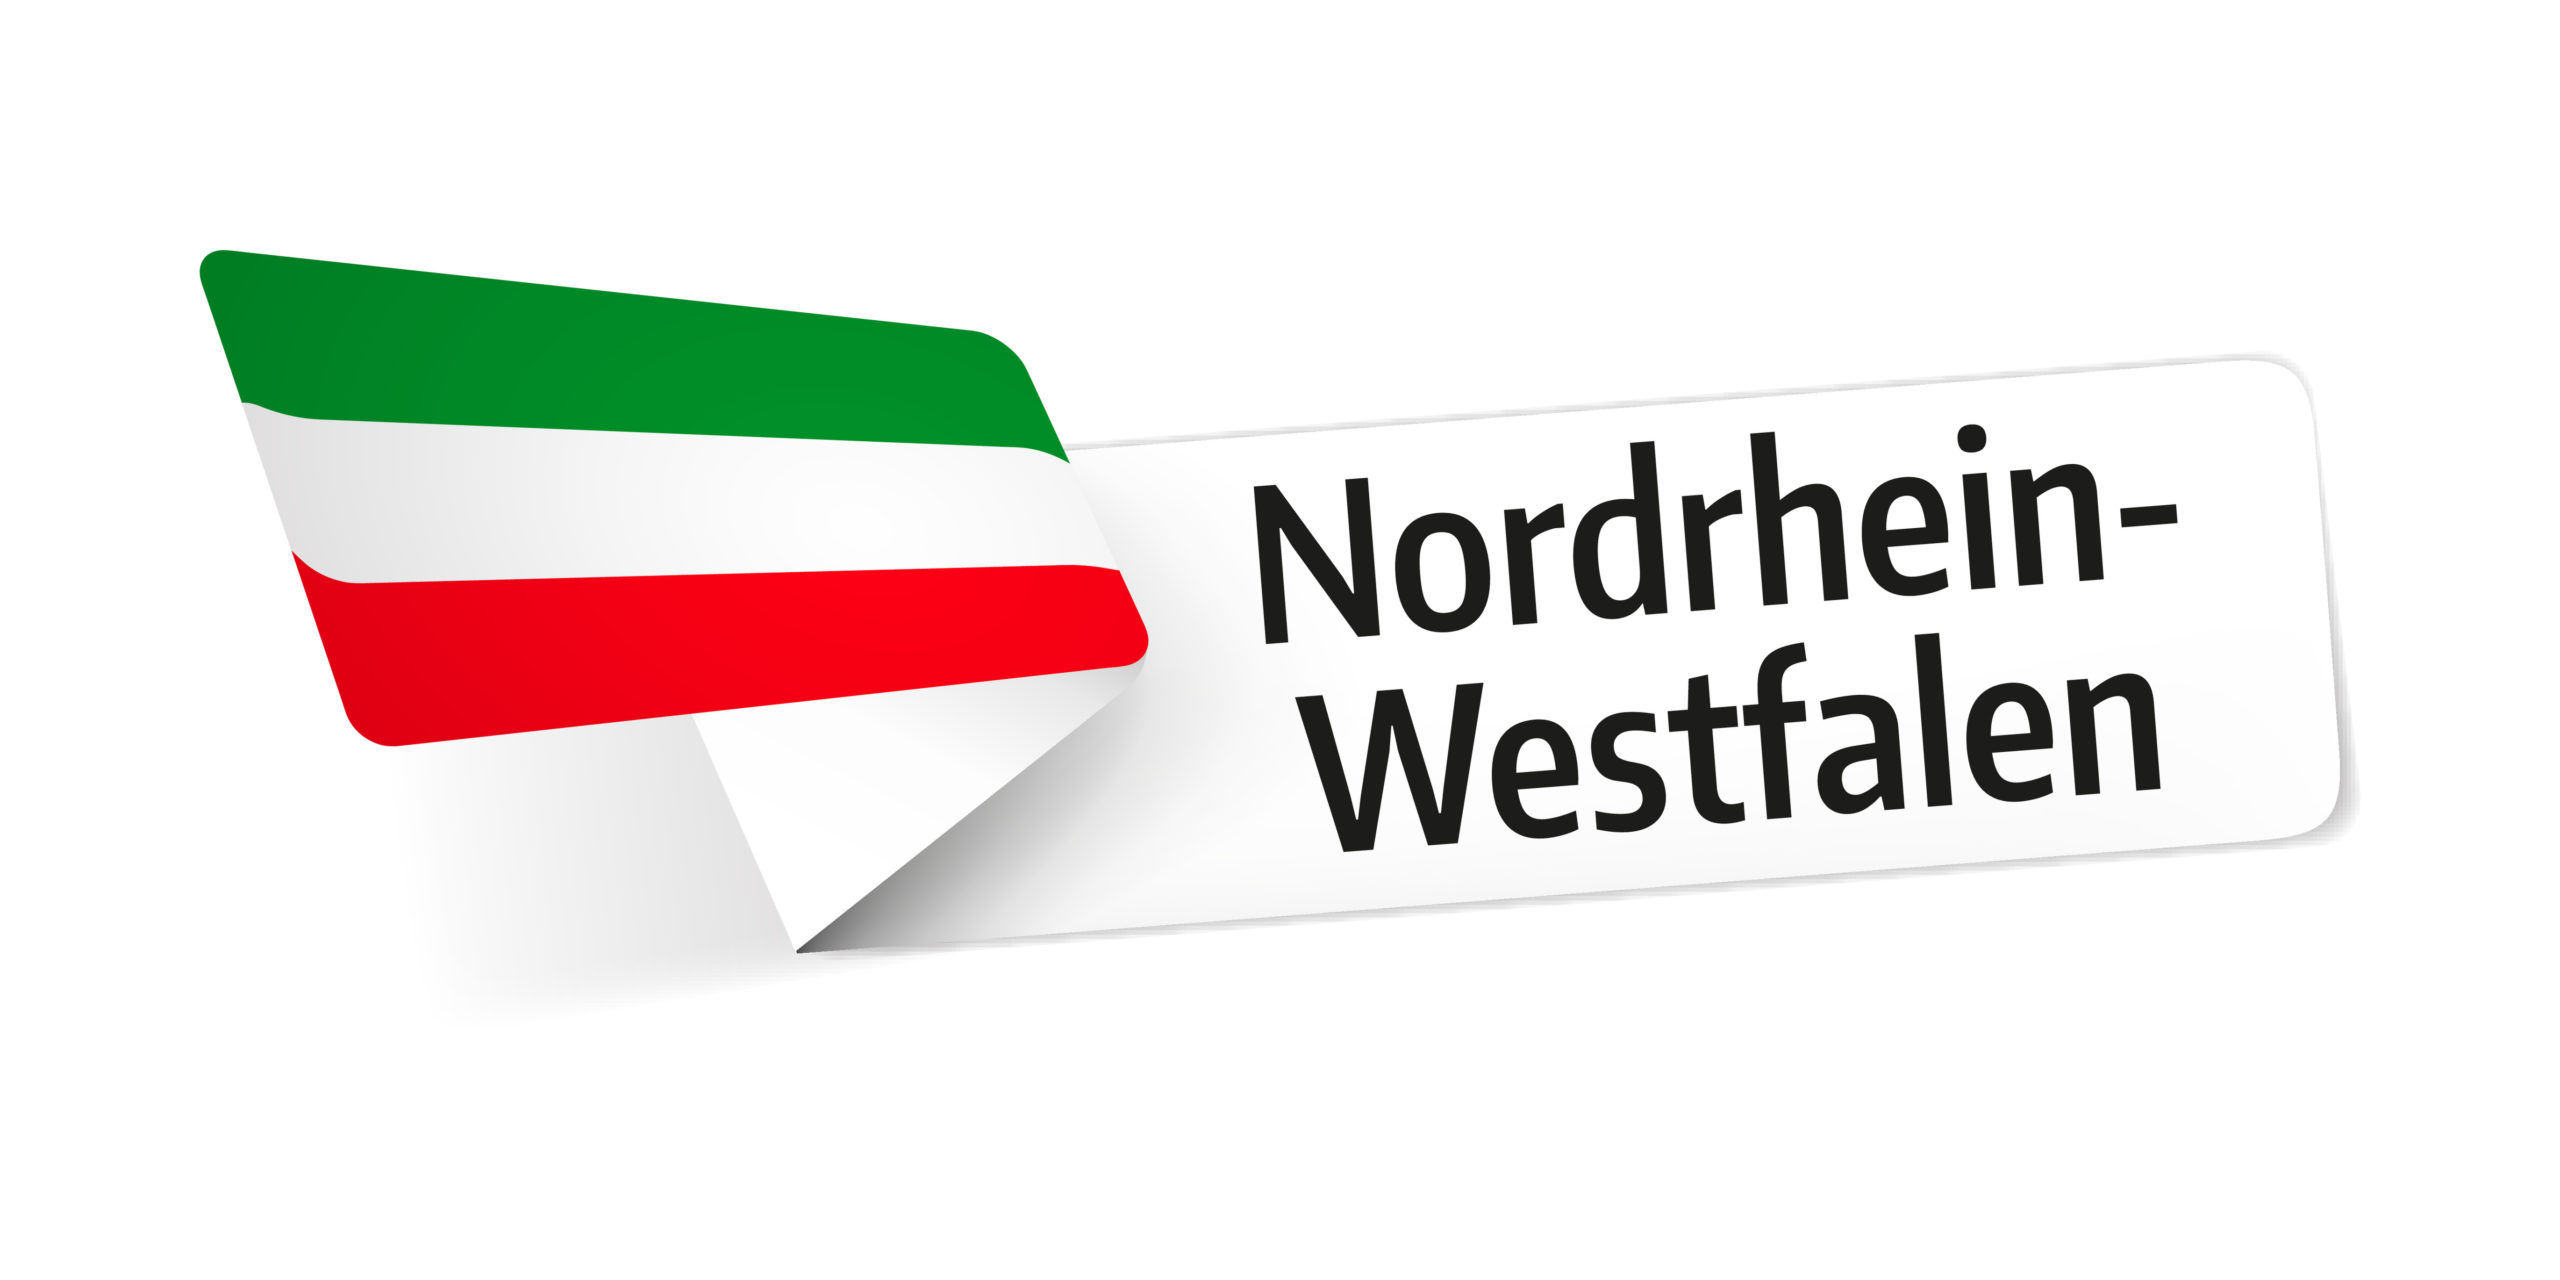 Flaggen der deutschen Bundesländer: Nordrhein-Westfalen